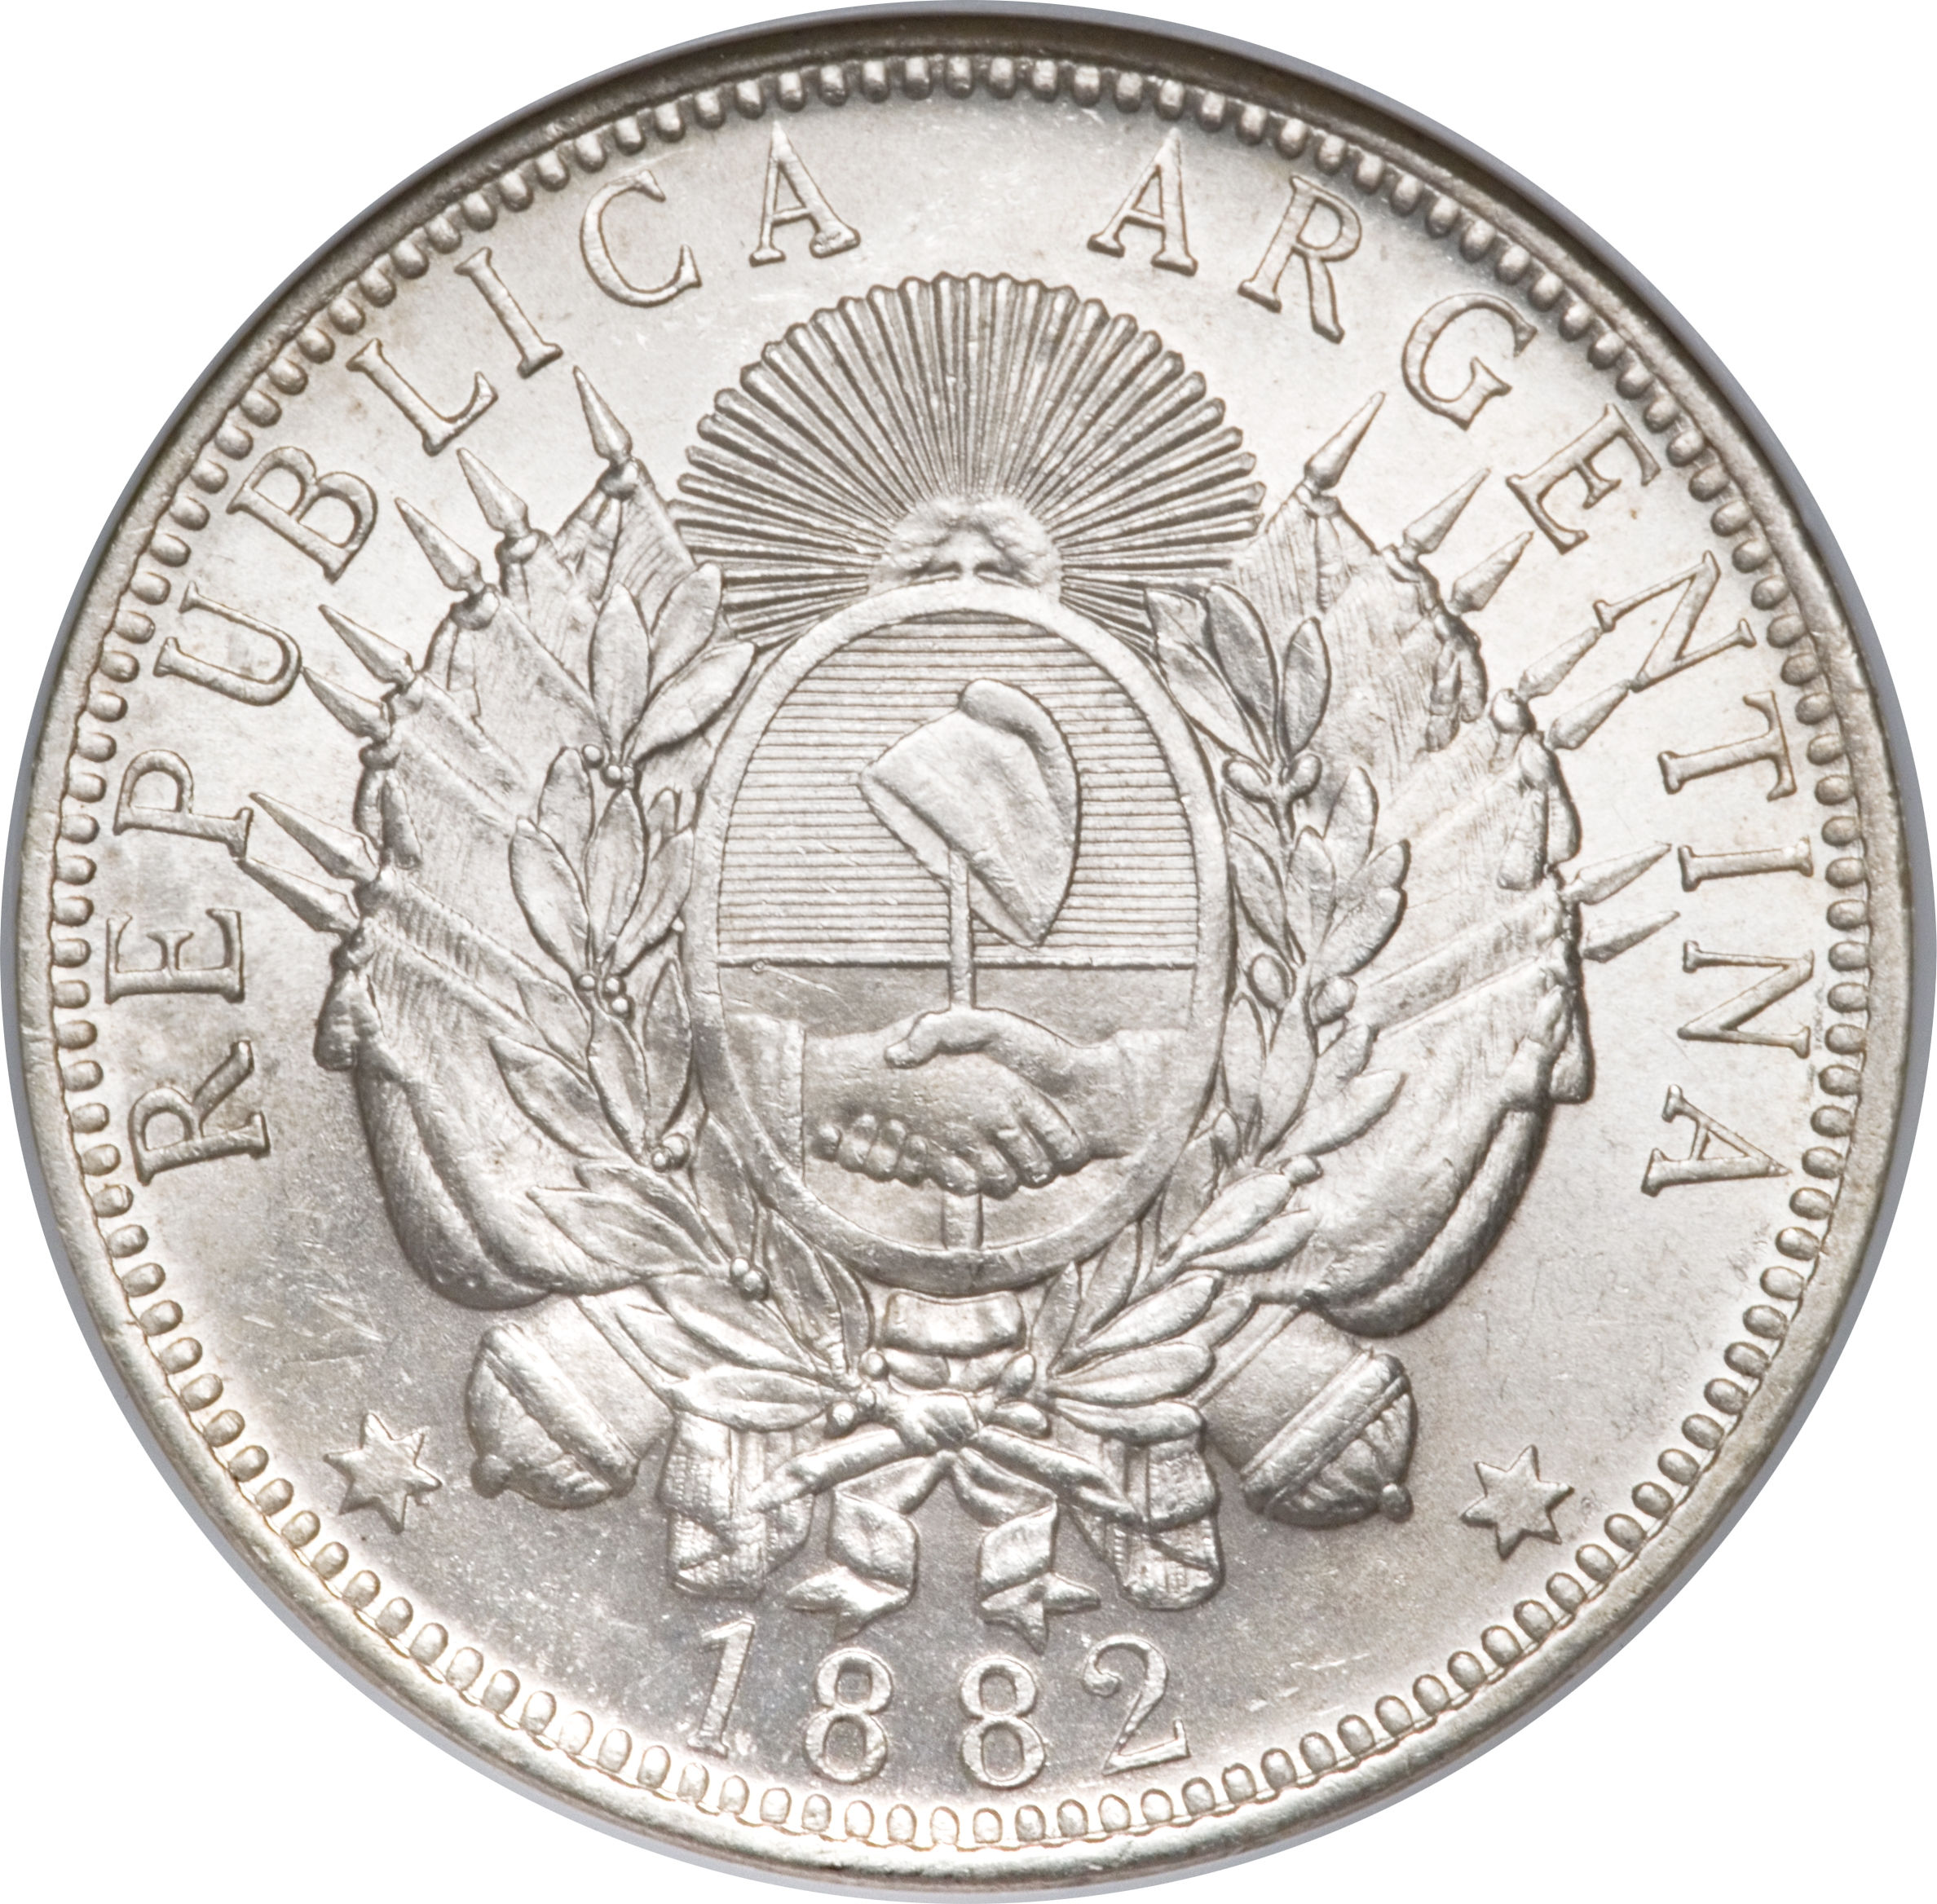 Argentine Peso #23